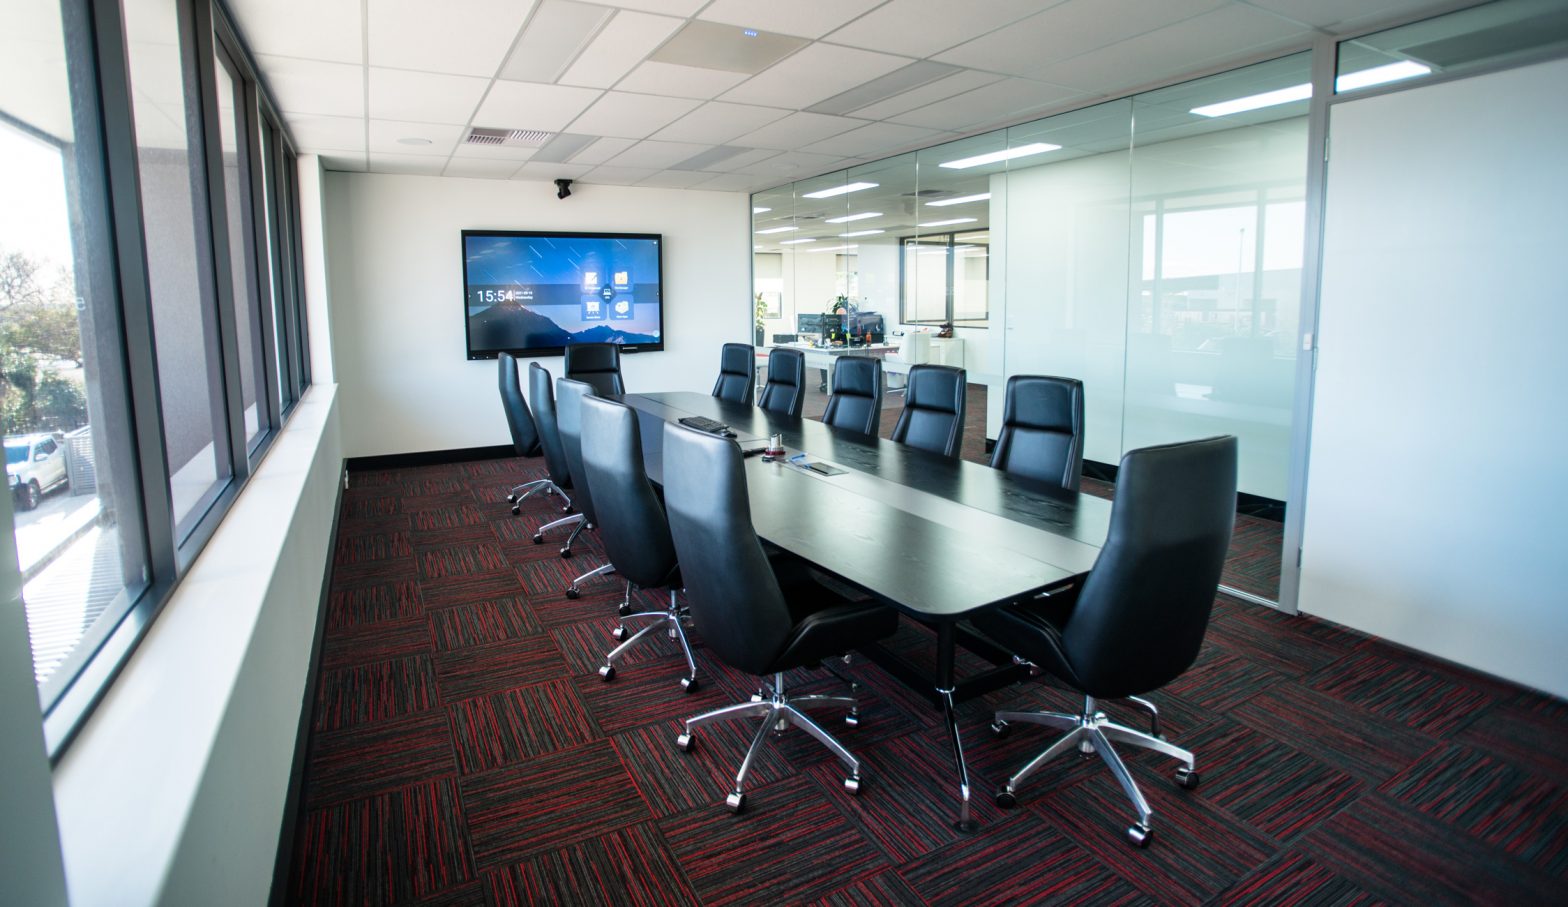 The new board room at Rentco's Perth headquarters